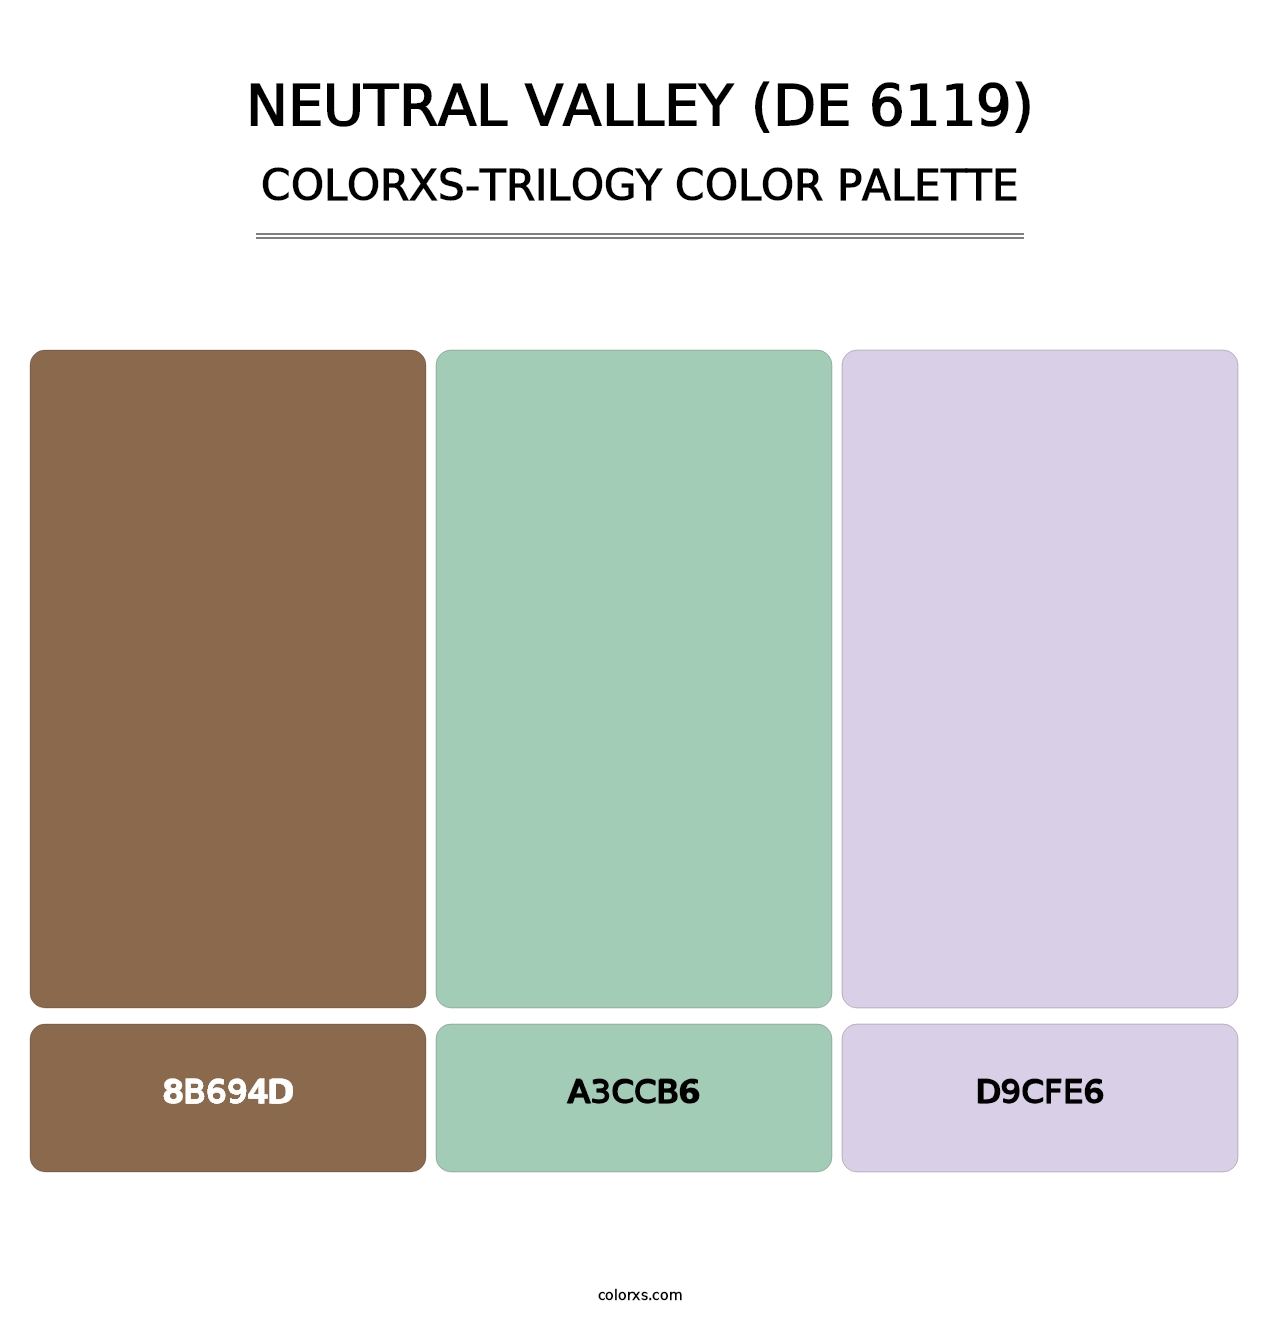 Neutral Valley (DE 6119) - Colorxs Trilogy Palette